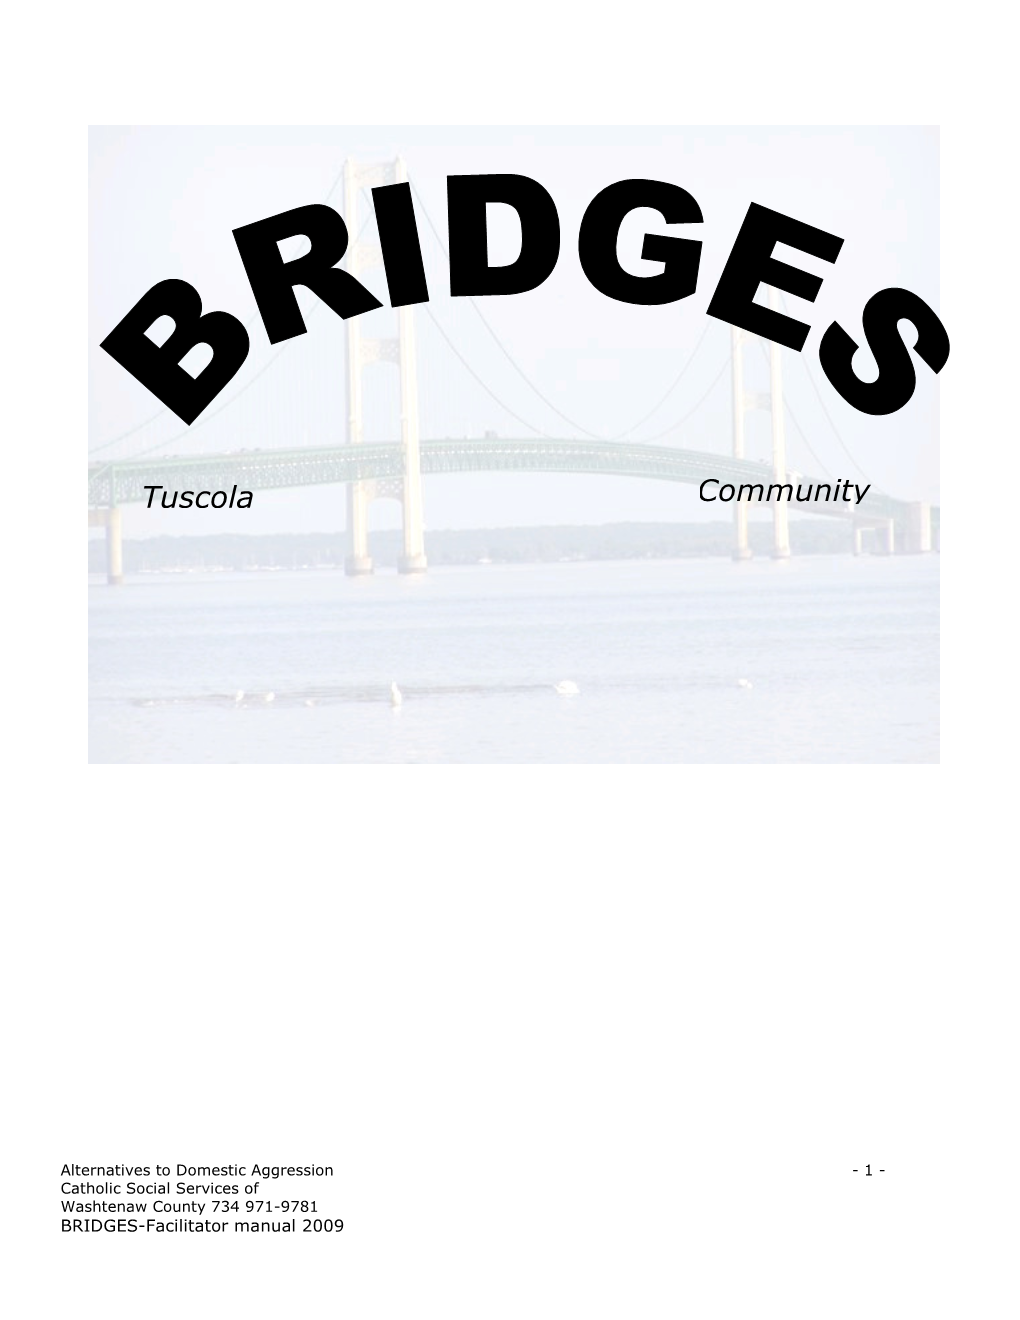 BRIDGES Facilitator Manual